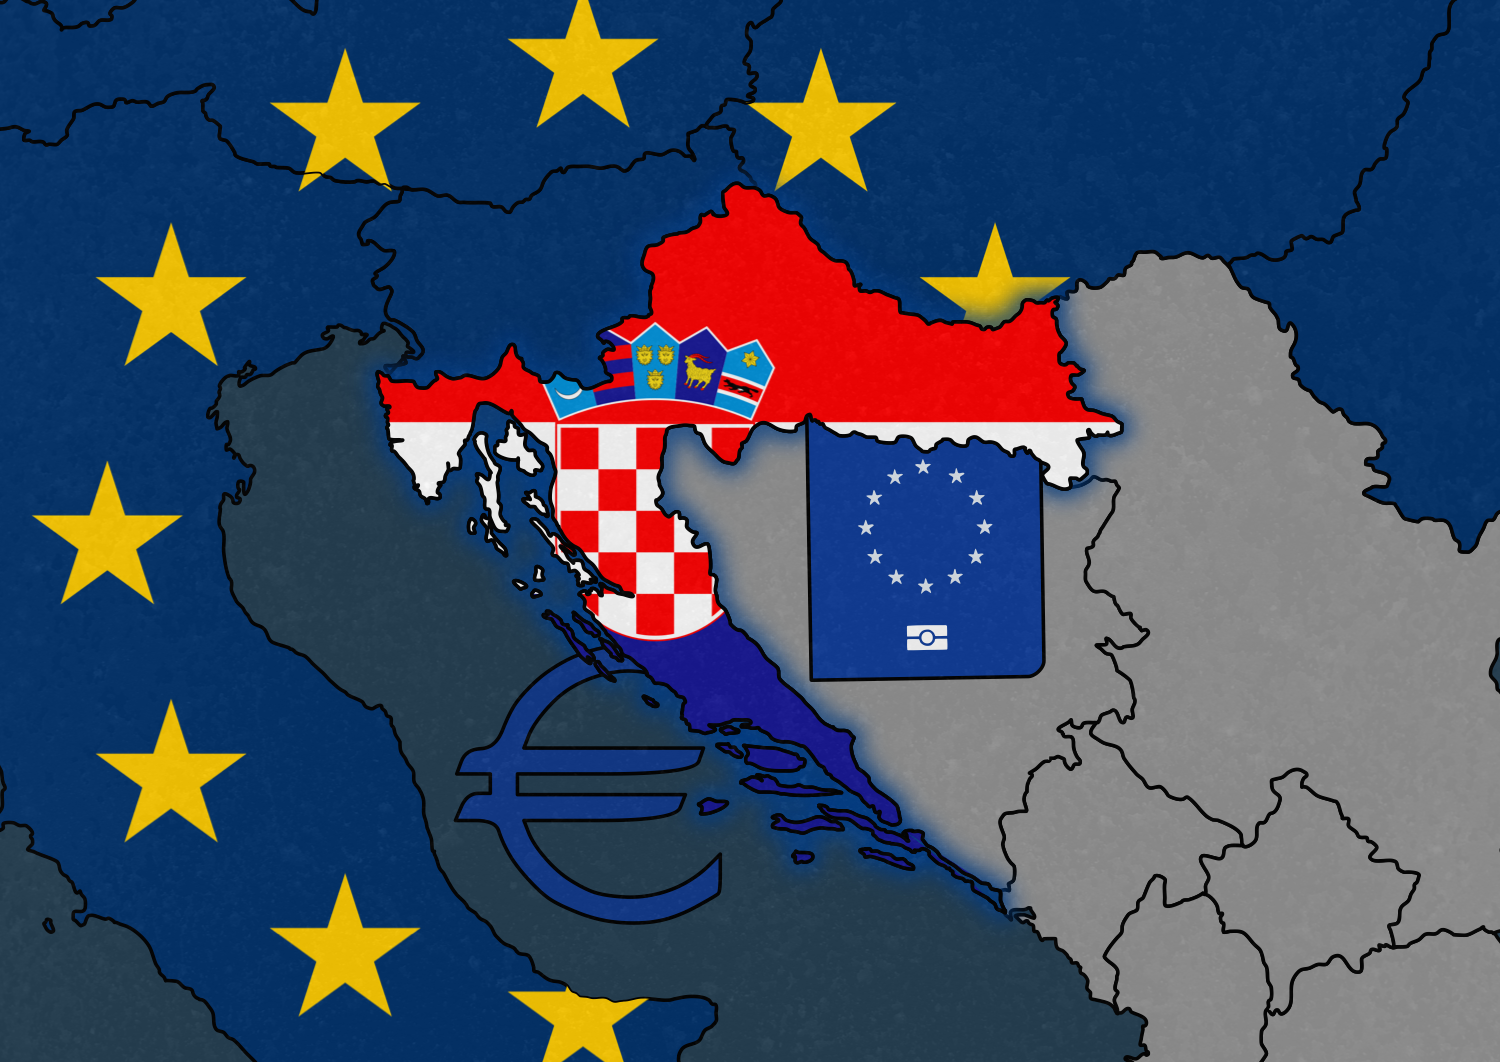 Croatia joins Eurozone and Schengen